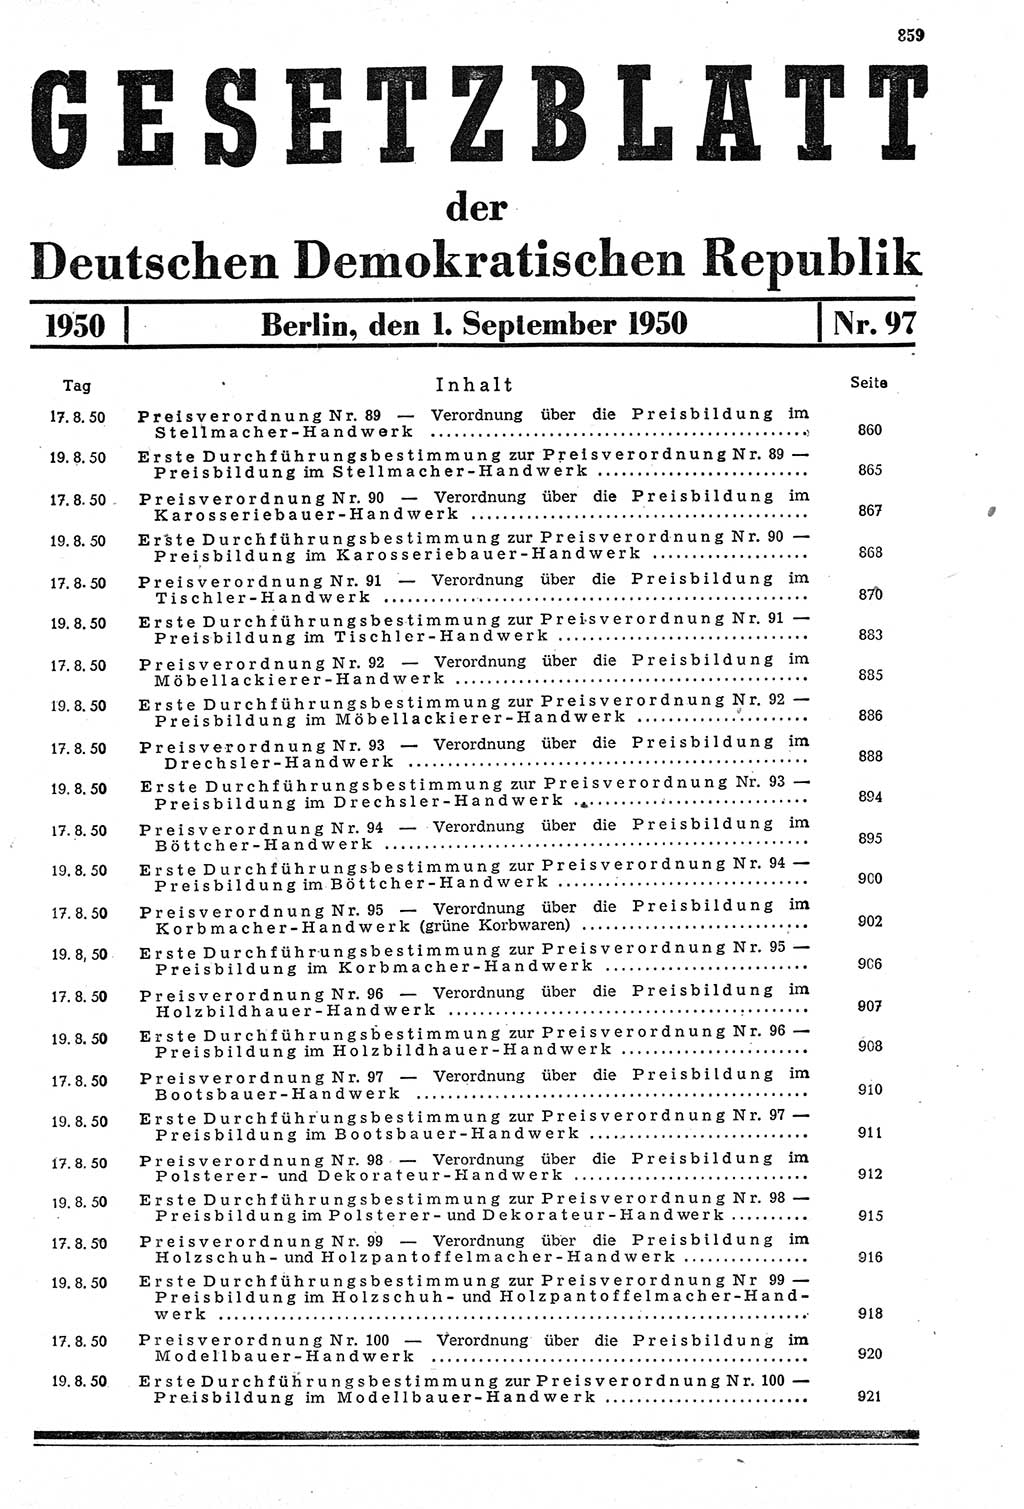 Gesetzblatt (GBl.) der Deutschen Demokratischen Republik (DDR) 1950, Seite 859 (GBl. DDR 1950, S. 859)